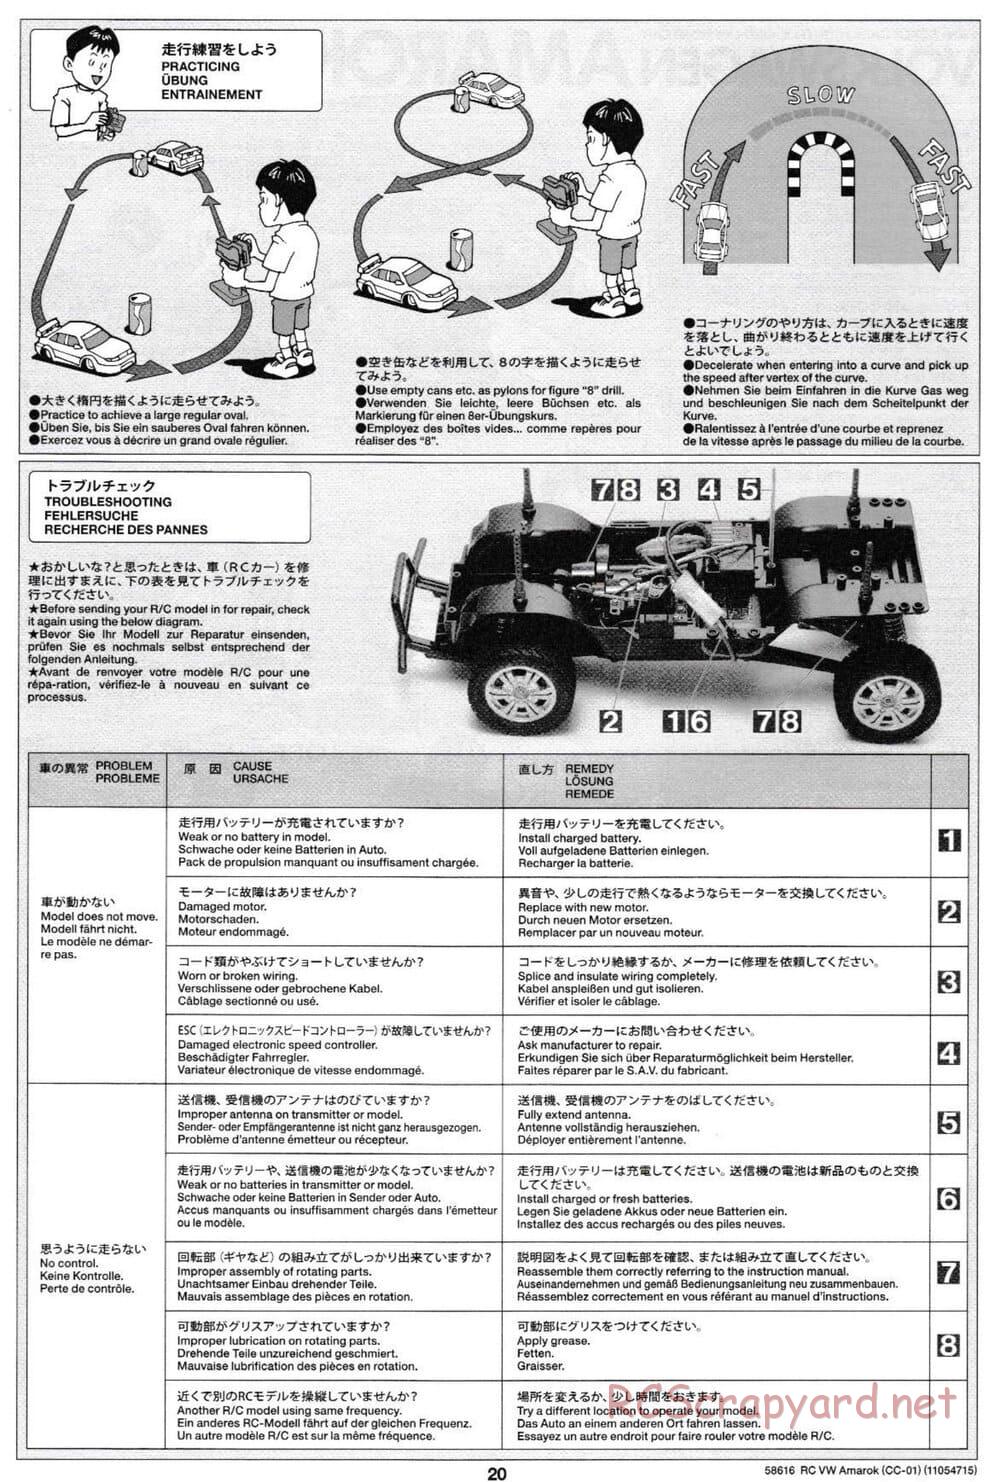 Tamiya - Volkswagen Amarok - CC-01 Chassis - Manual - Page 20